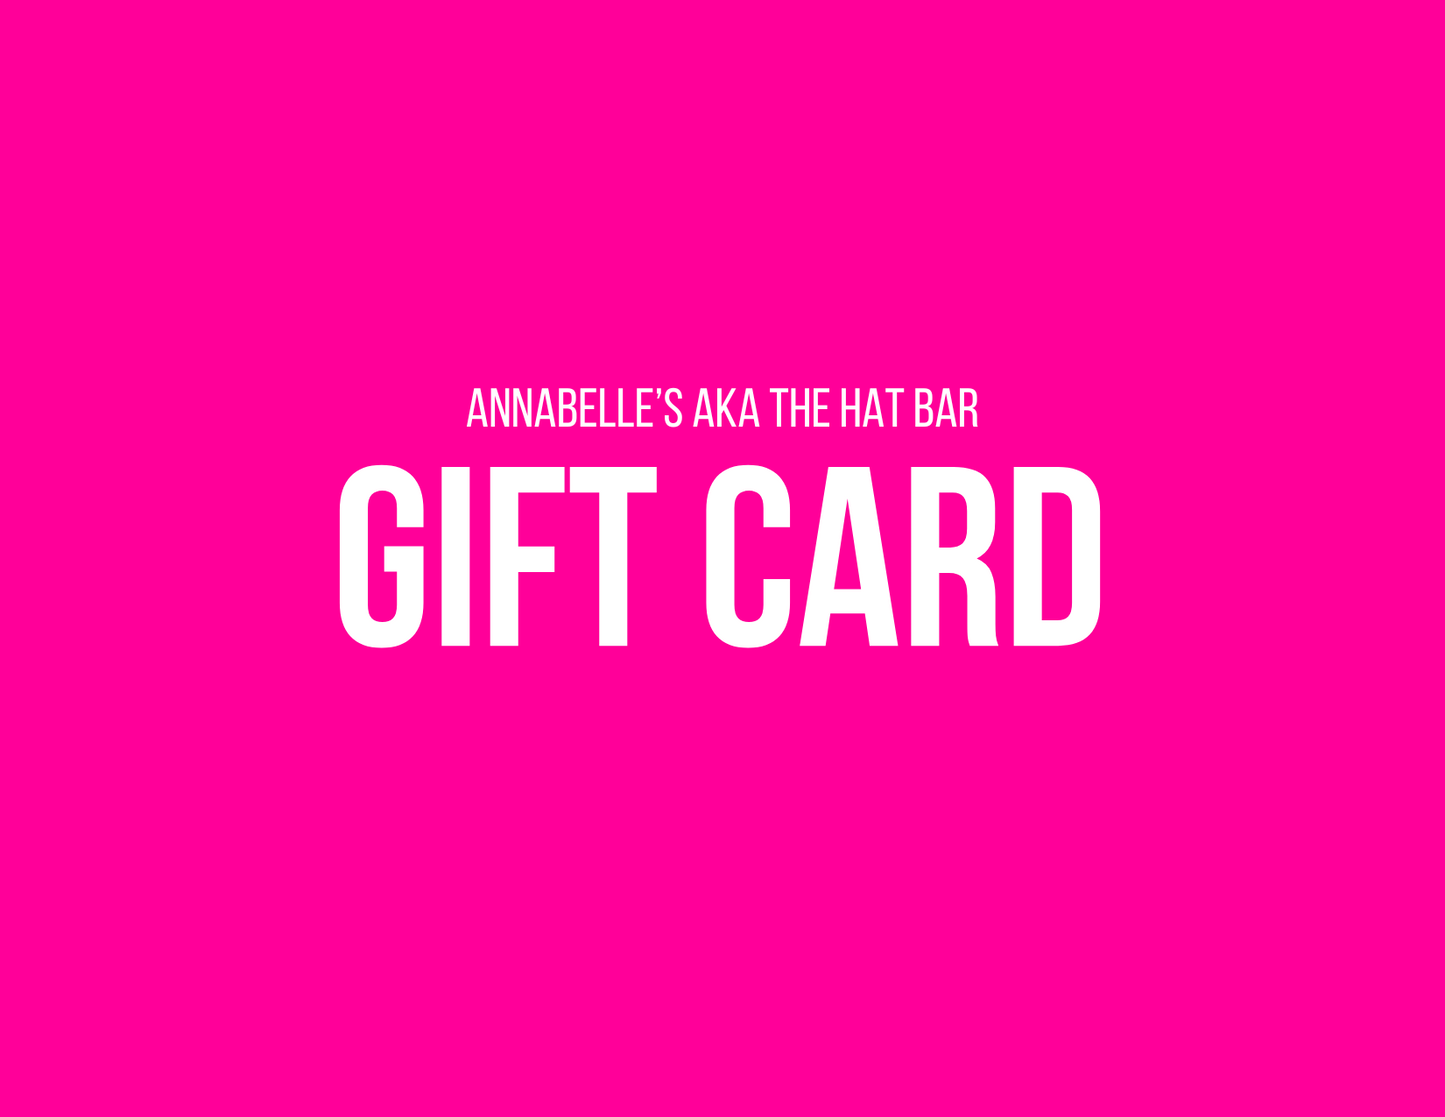 Annabelle's Gift Card